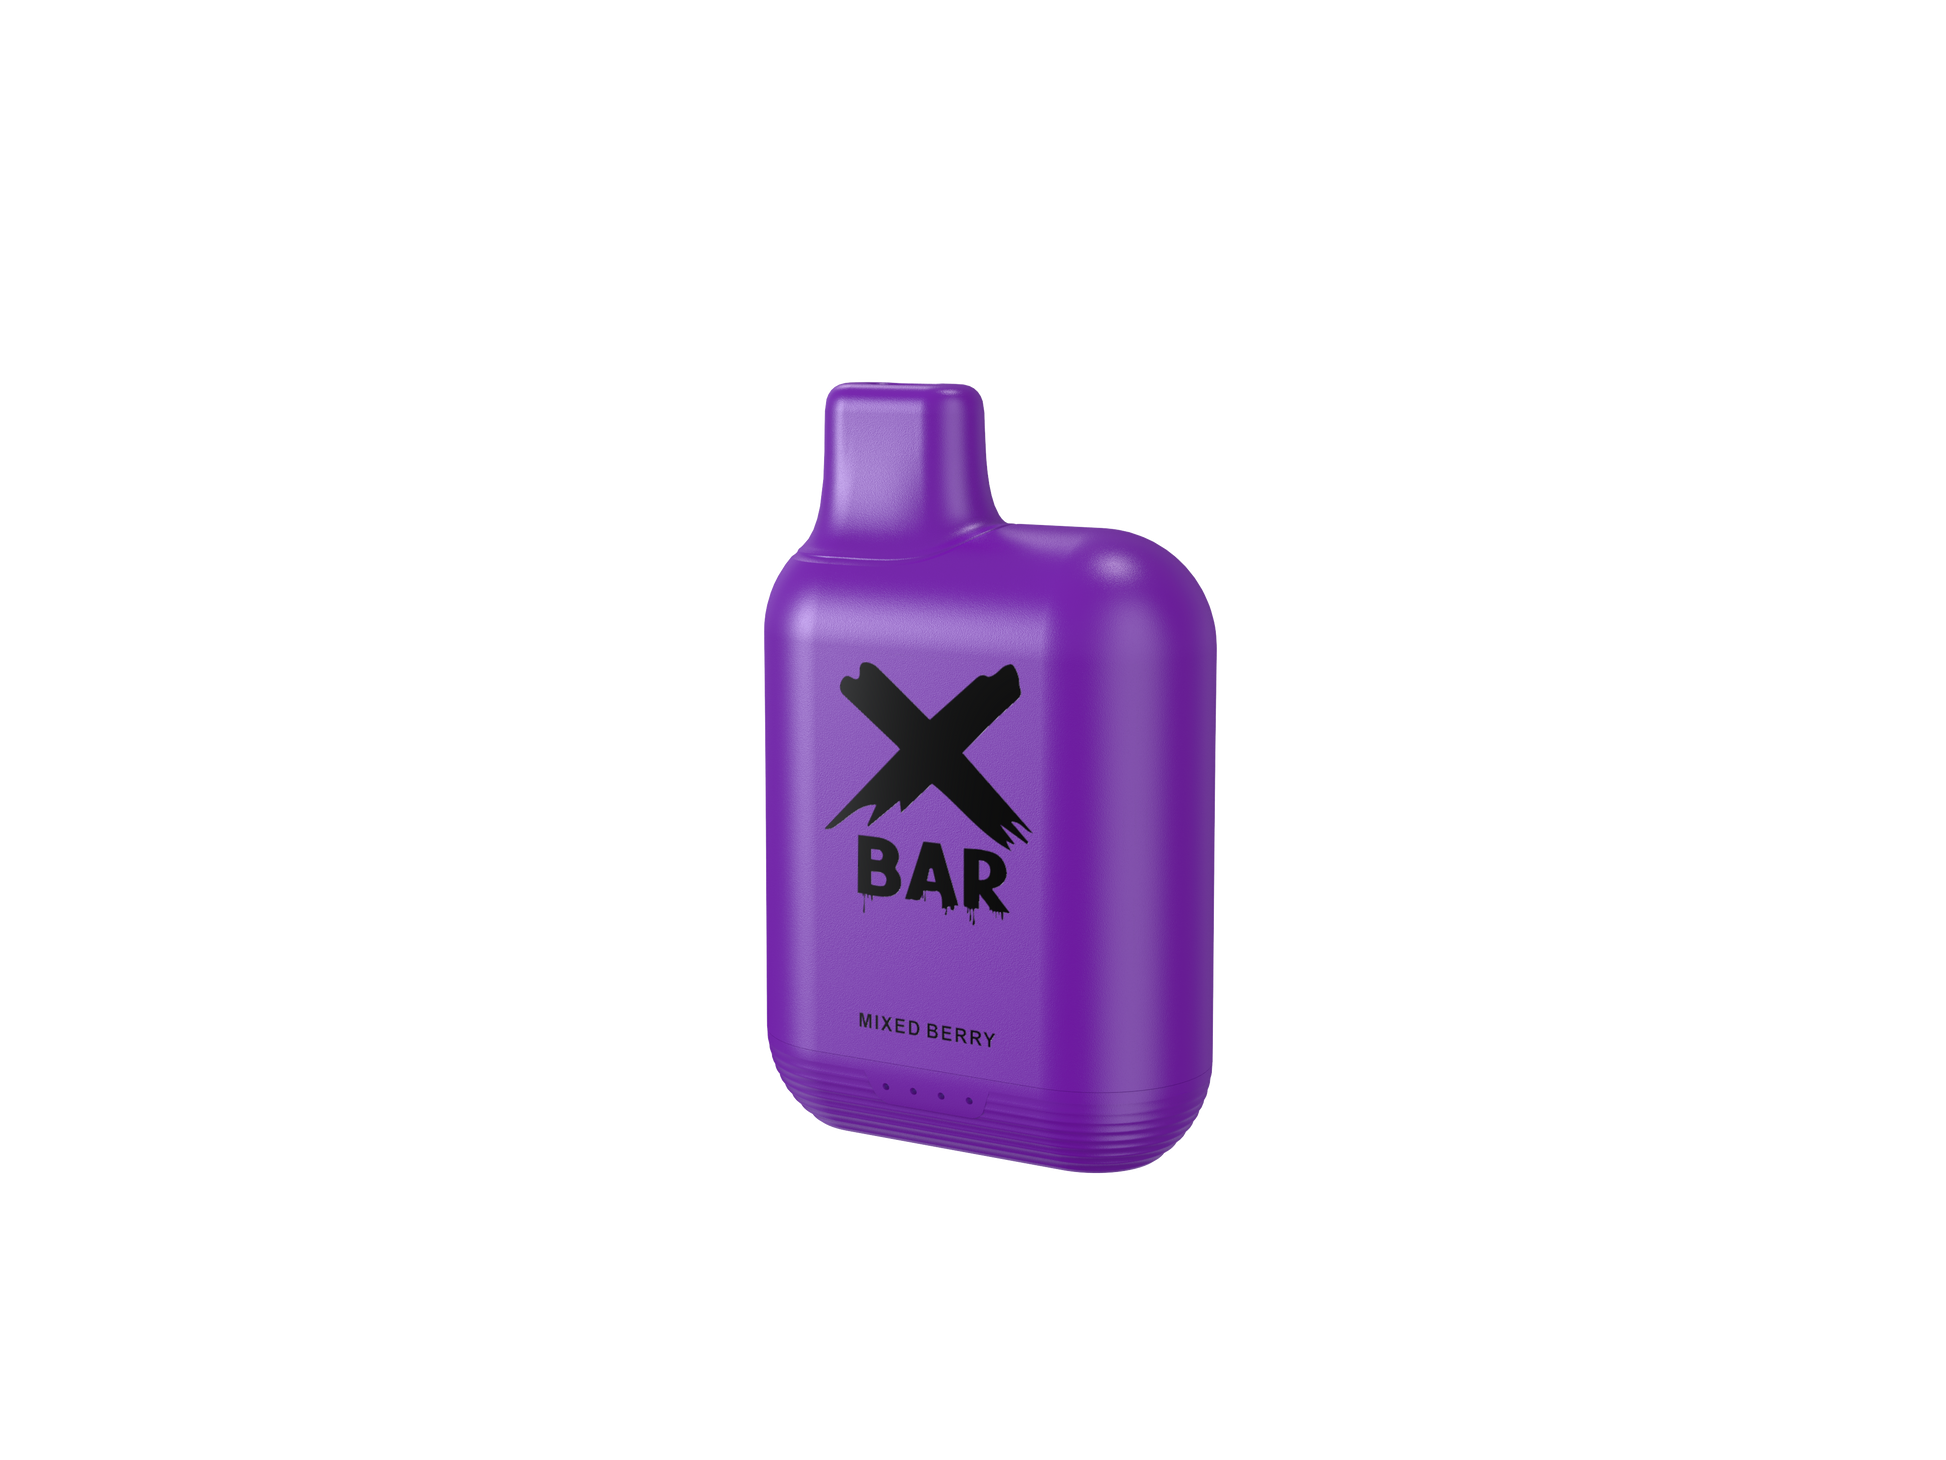 x bar box 